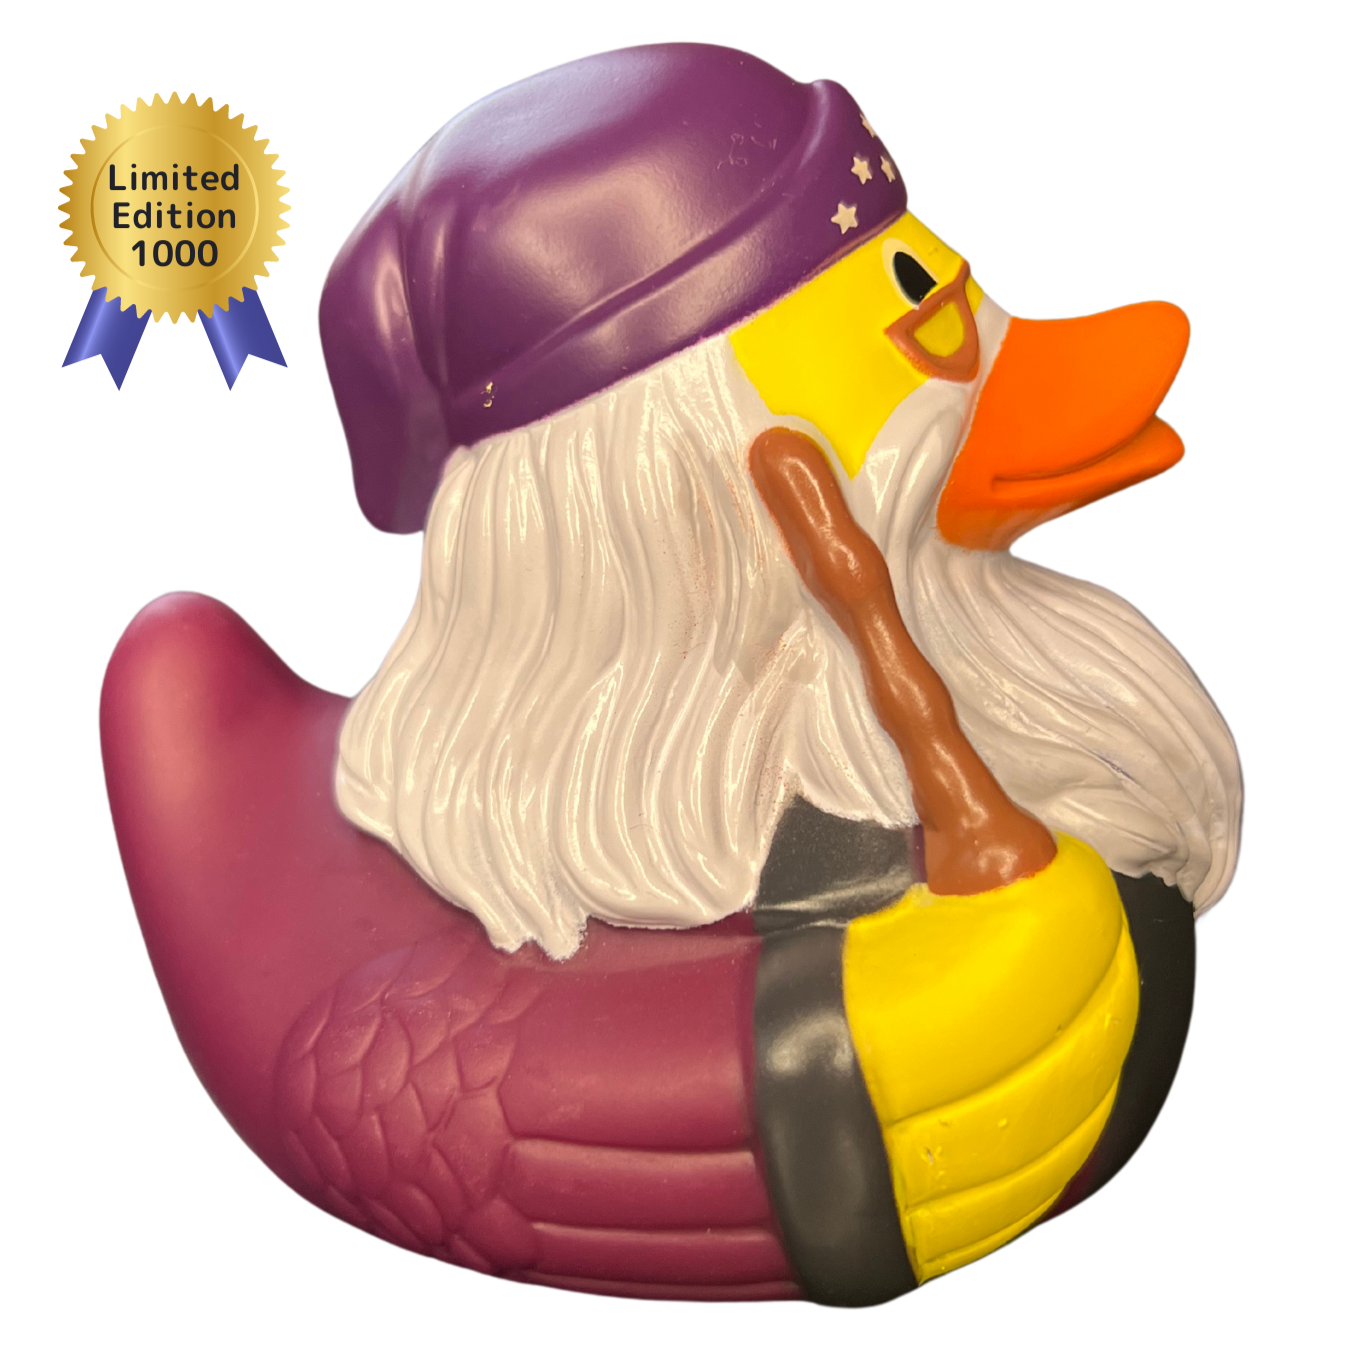 Grand Wizard Rubber Duck - Mystical Bath-time Companion